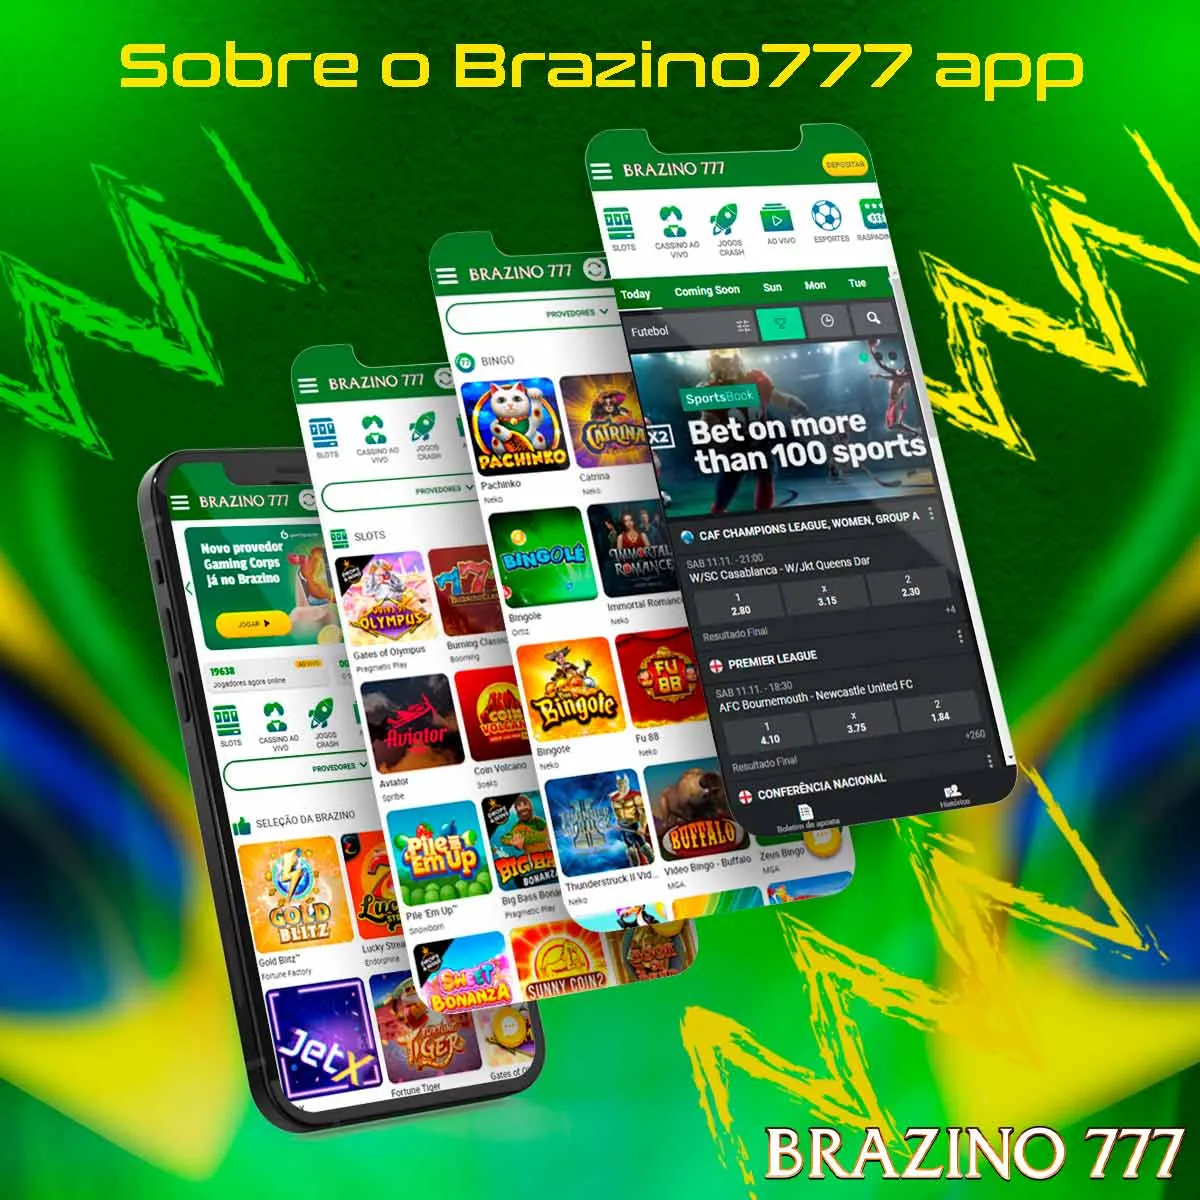 Avaliação do aplicativo Brazino777